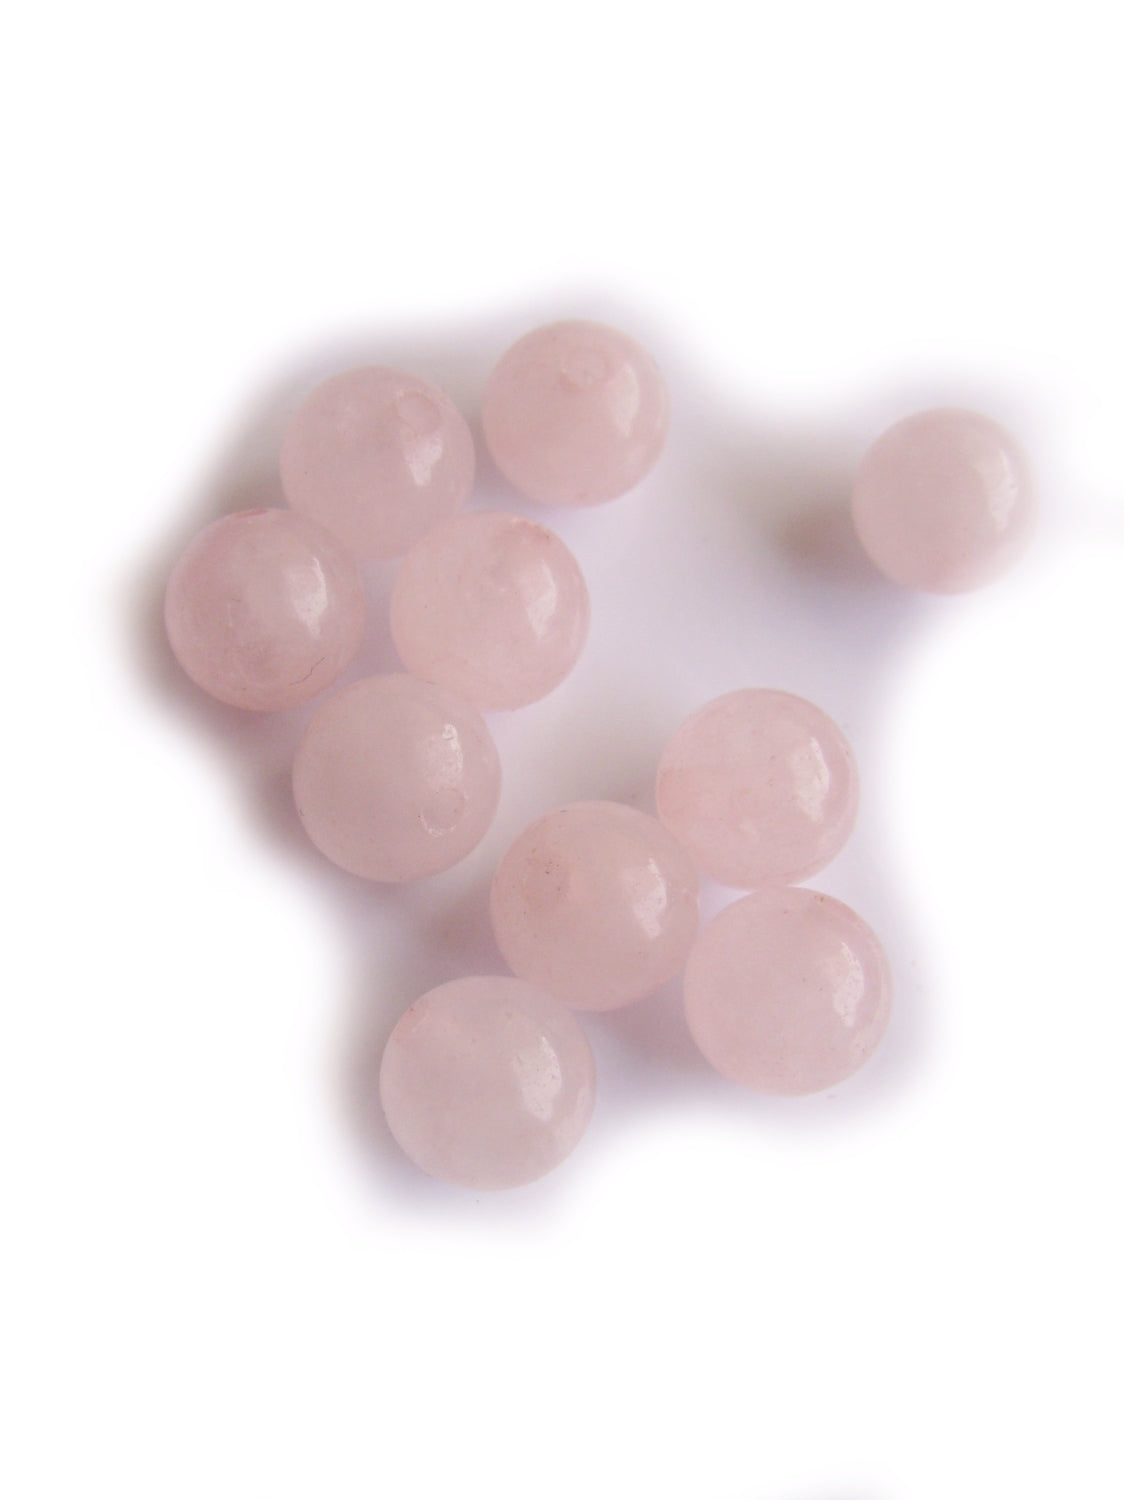 10 Rosenquarz Perlen 6mm, Edelstein, rosa, Schmuck mit Perlen selbst machen